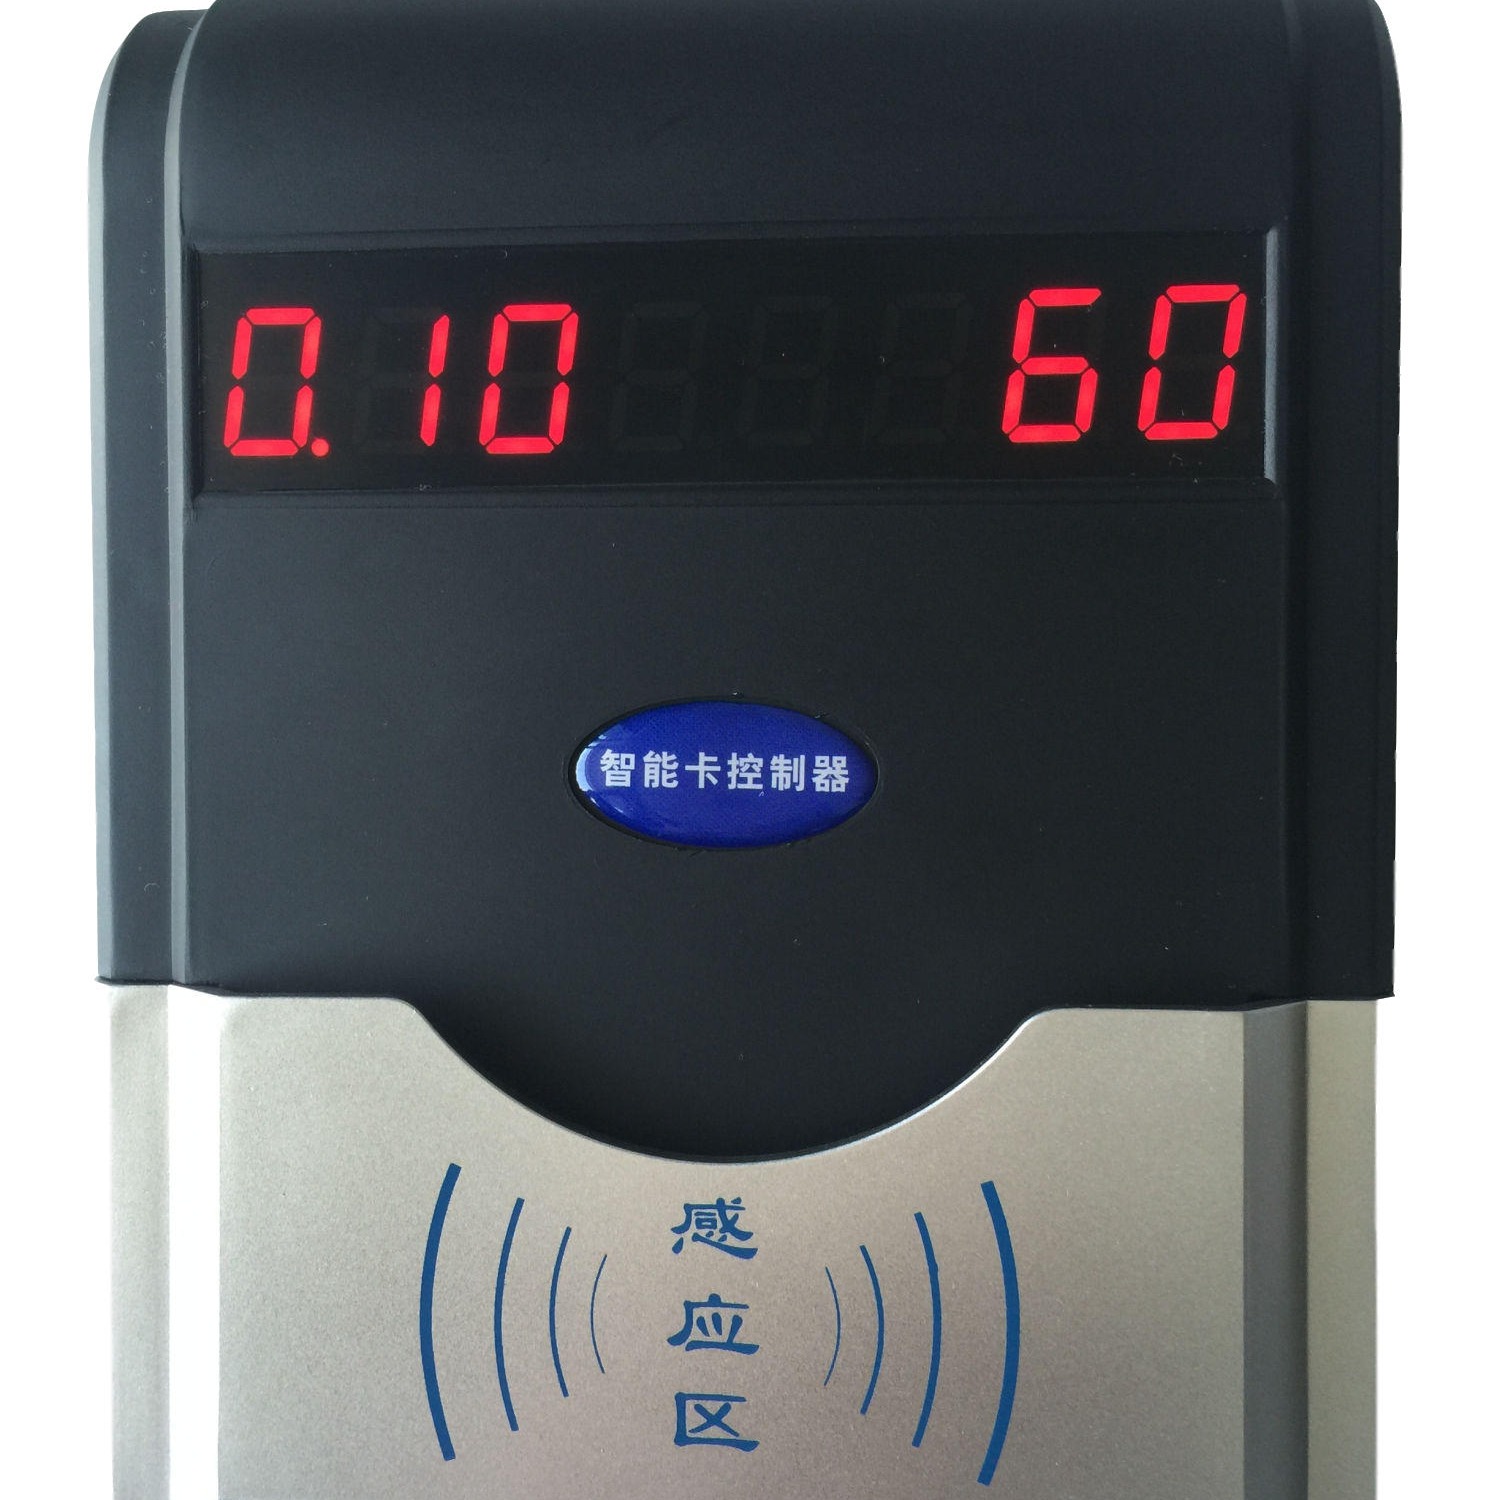 兴天下HF-660智能卡控水机,感应卡水控机,水控控水器